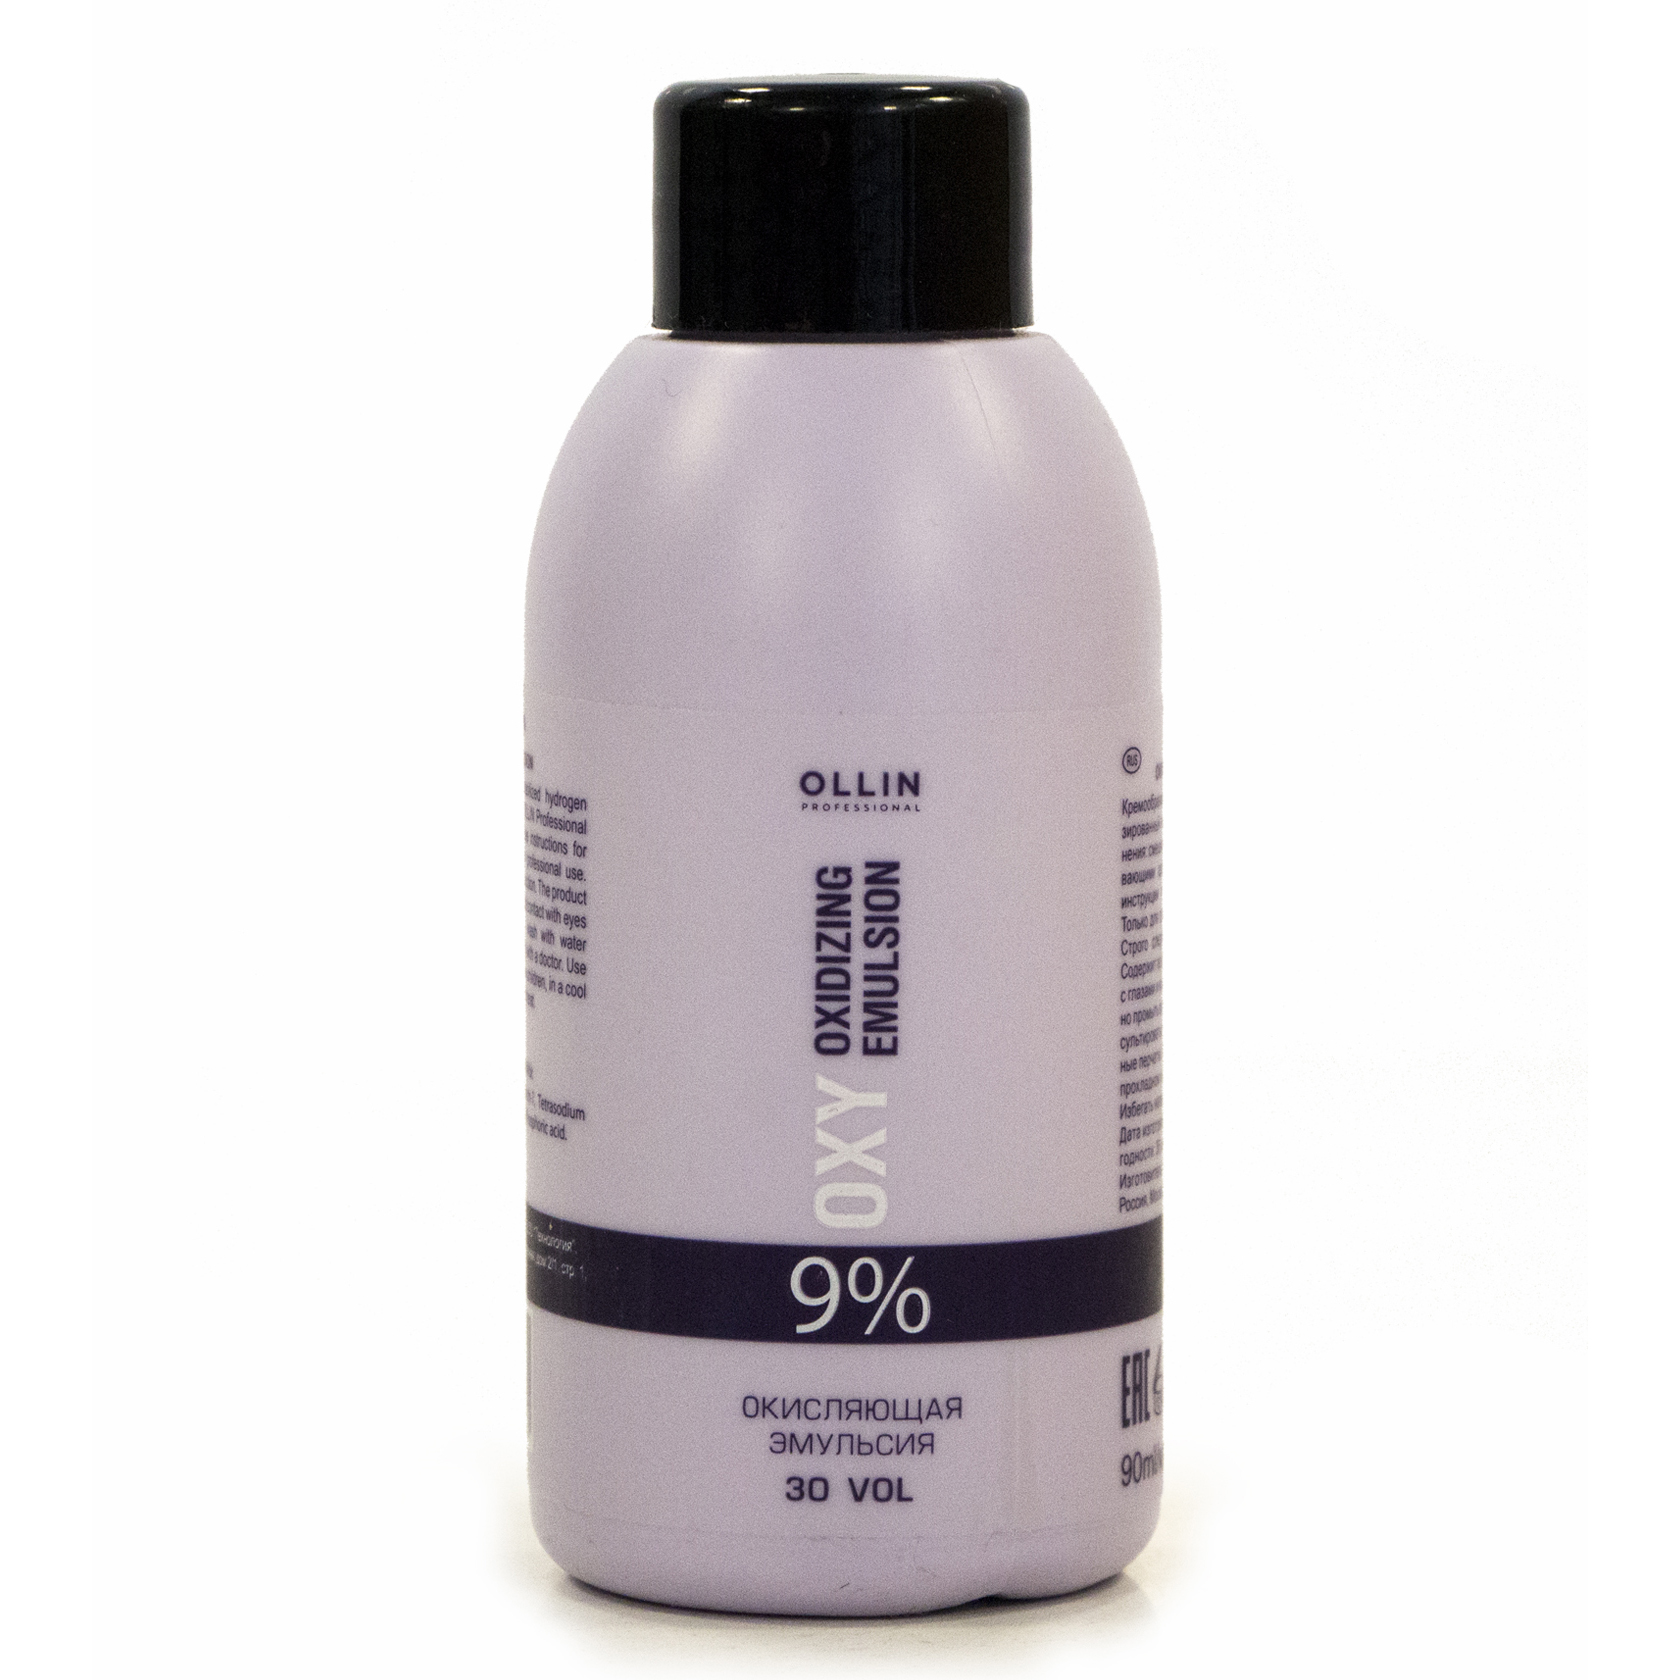 OLLIN performance OXY   9% 30vol. Окисляющая эмульсия 90мл/ Oxidizing Emulsion